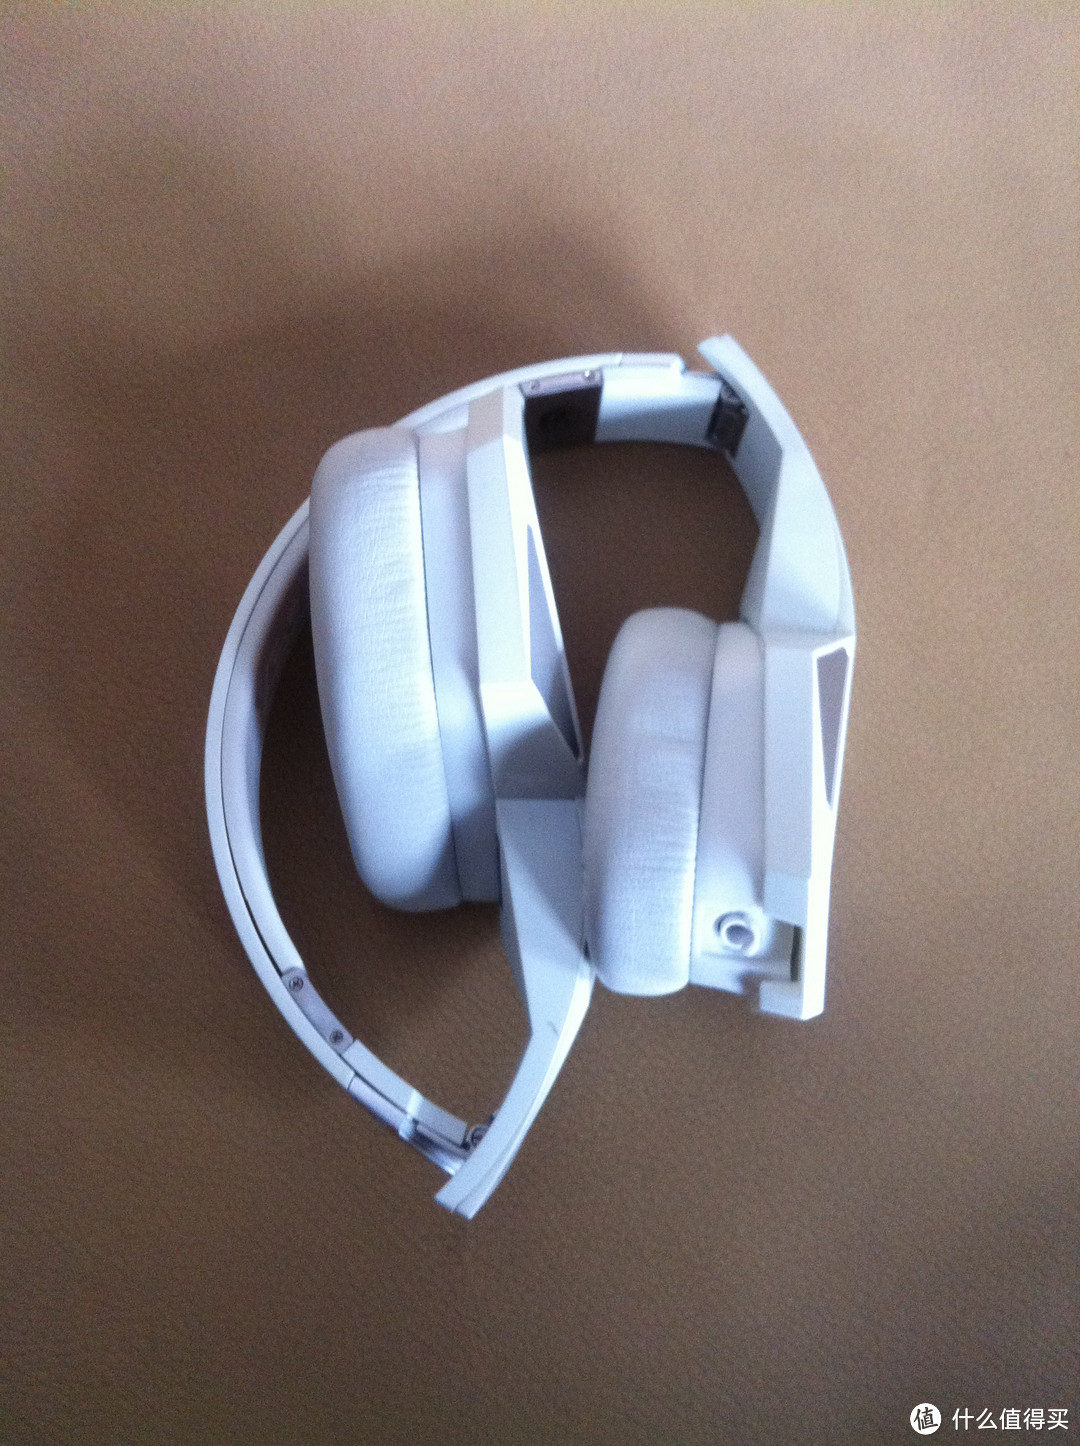 纯美白色：Monster/Diesel 魔声/迪赛 合作款 Vektr 头戴式耳机